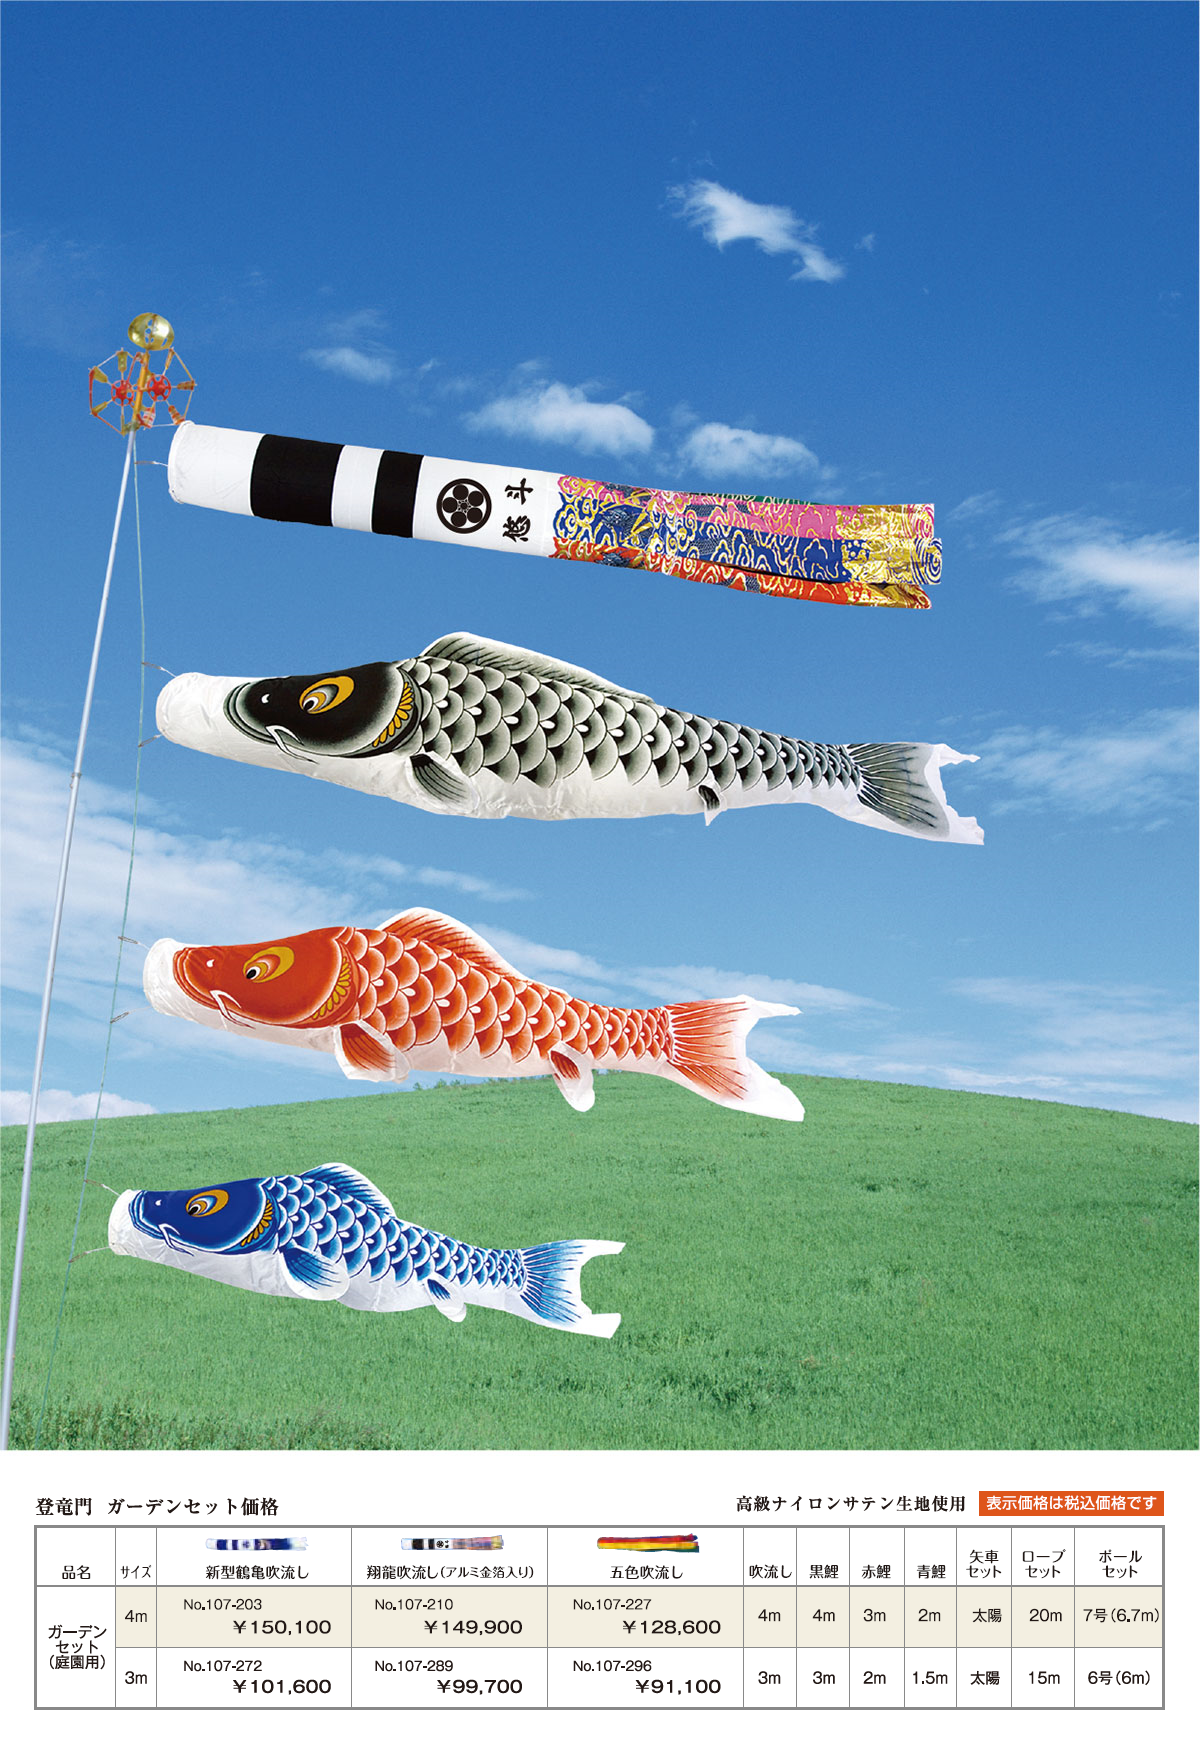 登竜門　ガーデンセット鯉のぼりの画像と価格表